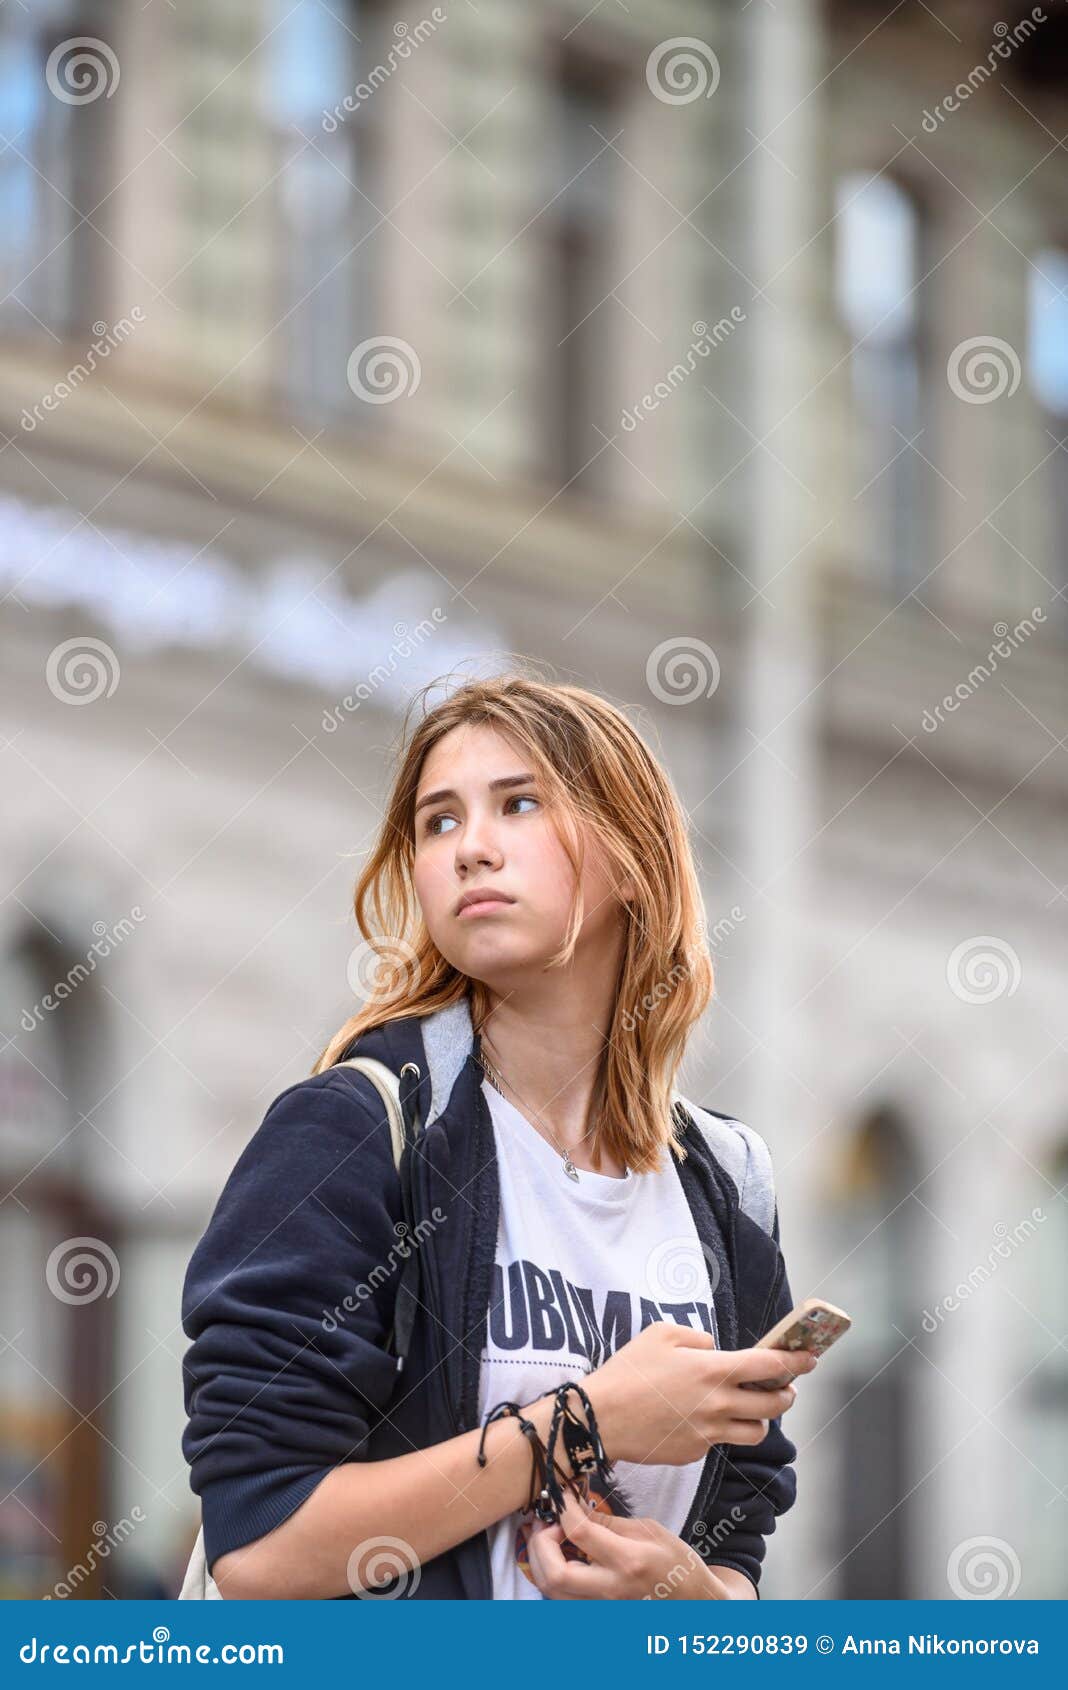 Russian Girls Walking Along Telegraph